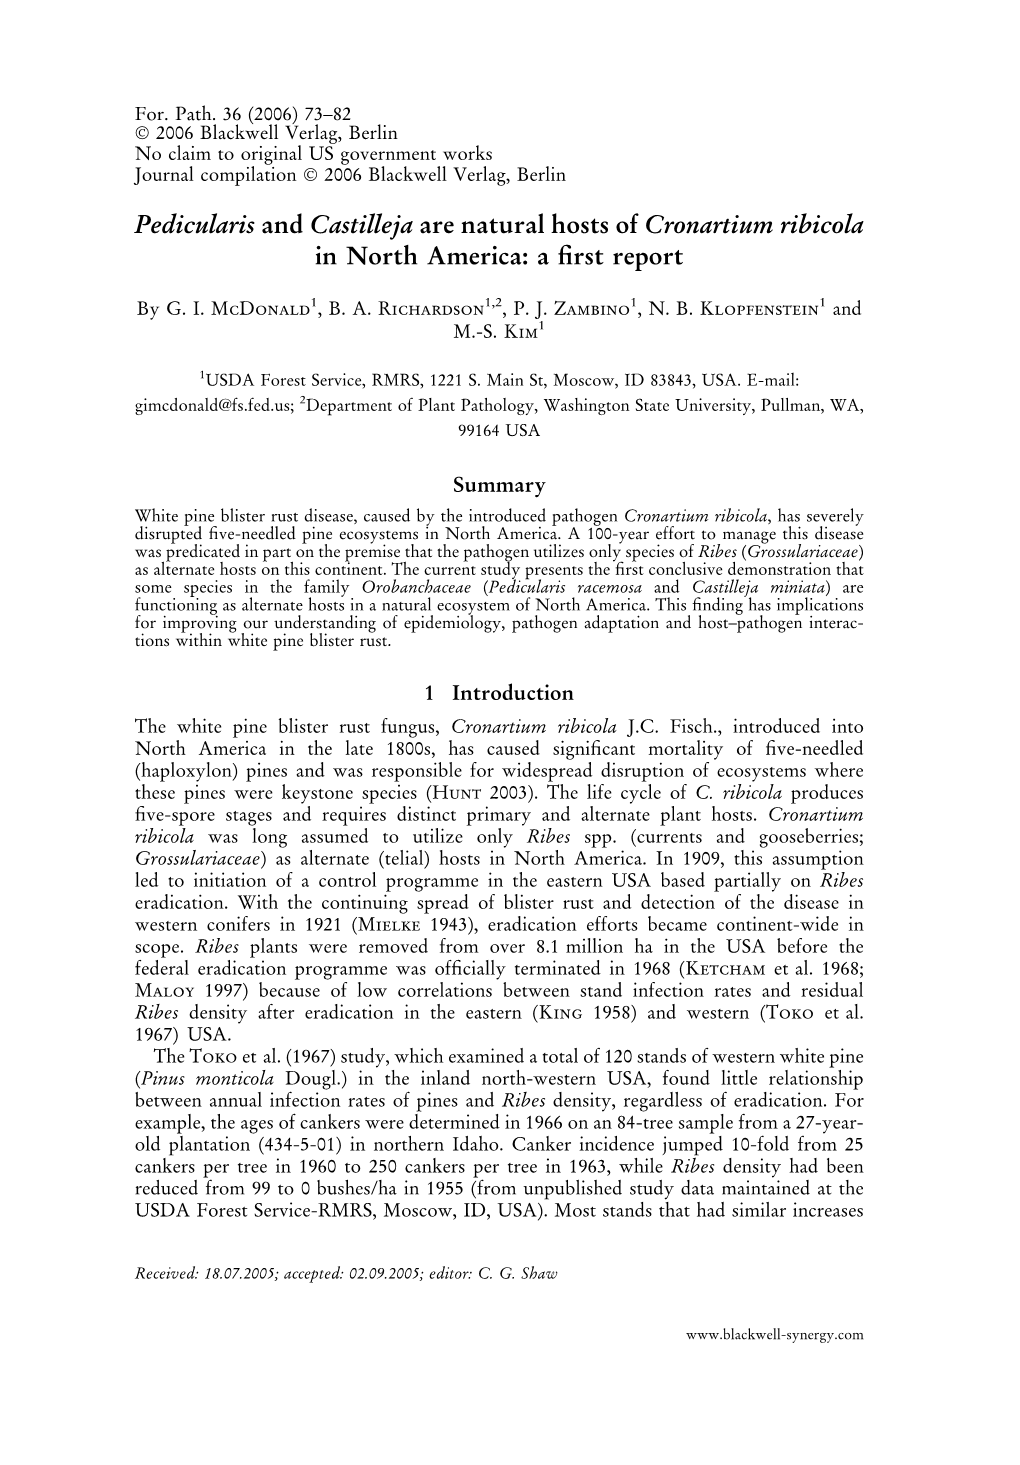 Pedicularis and Castilleja Are Natural Hosts of Cronartium Ribicola in North America: a ﬁrst Report